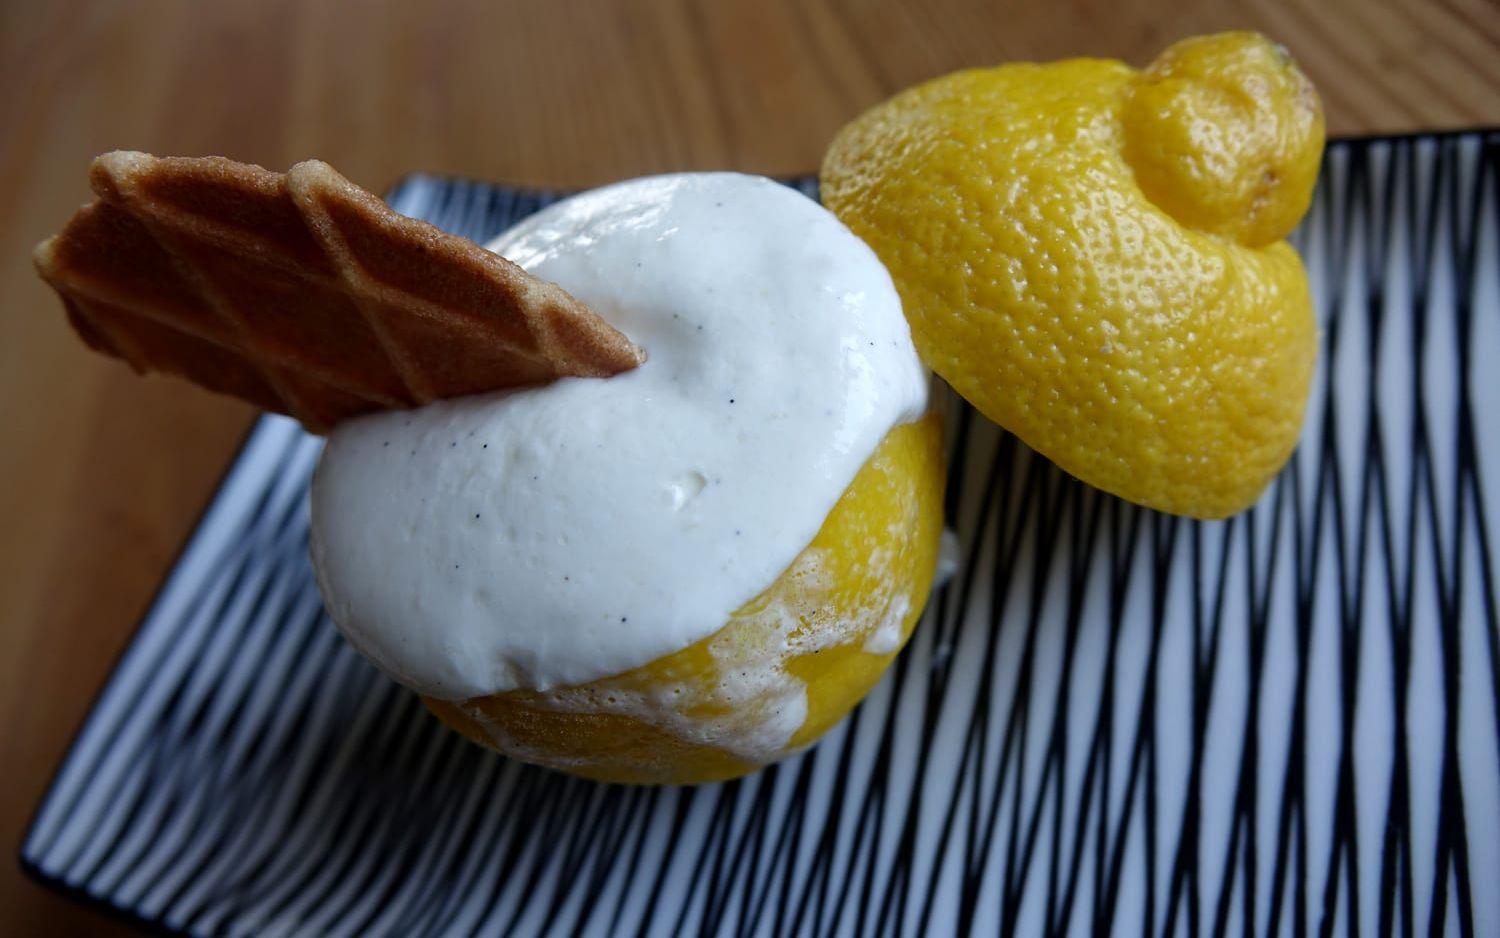 Friskt. Frysta citroner fyllda med glass som smaksatts av citron, limoncello och vodka.